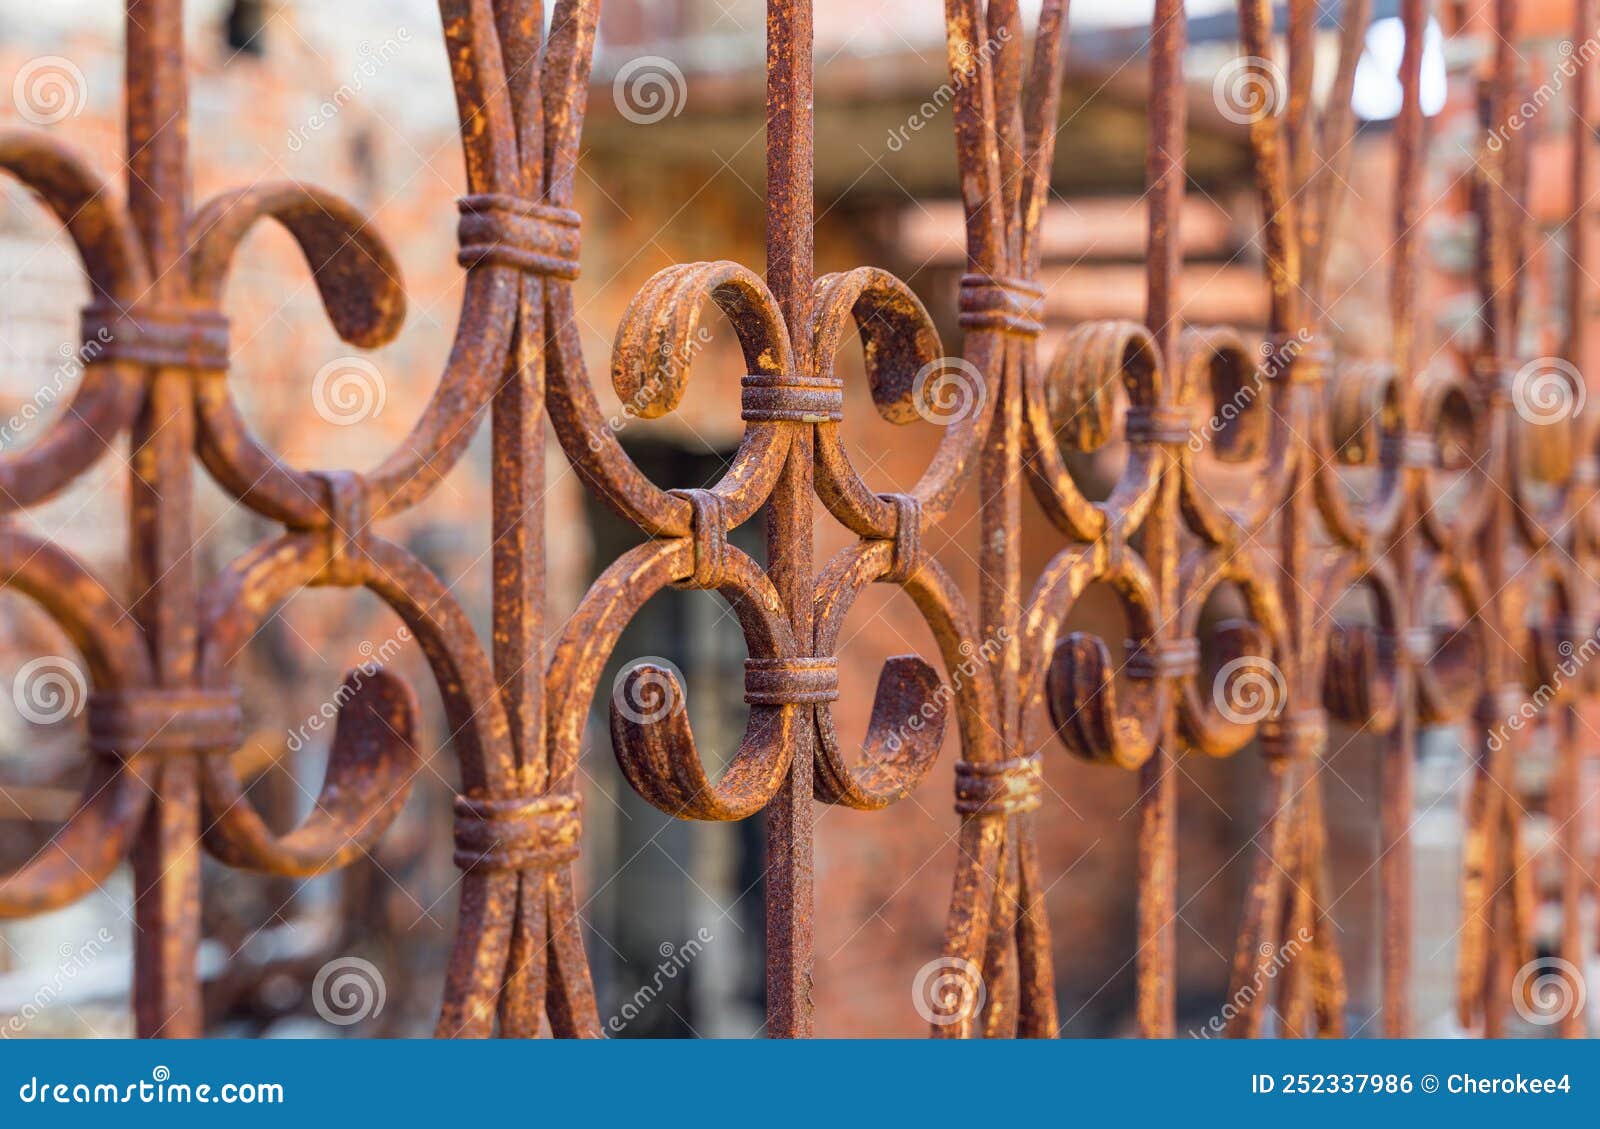 Schöner Zaun aus dekorativem Metall mit künstlerischem Schmieden nach einem Brand. Eisengardrail schließen.